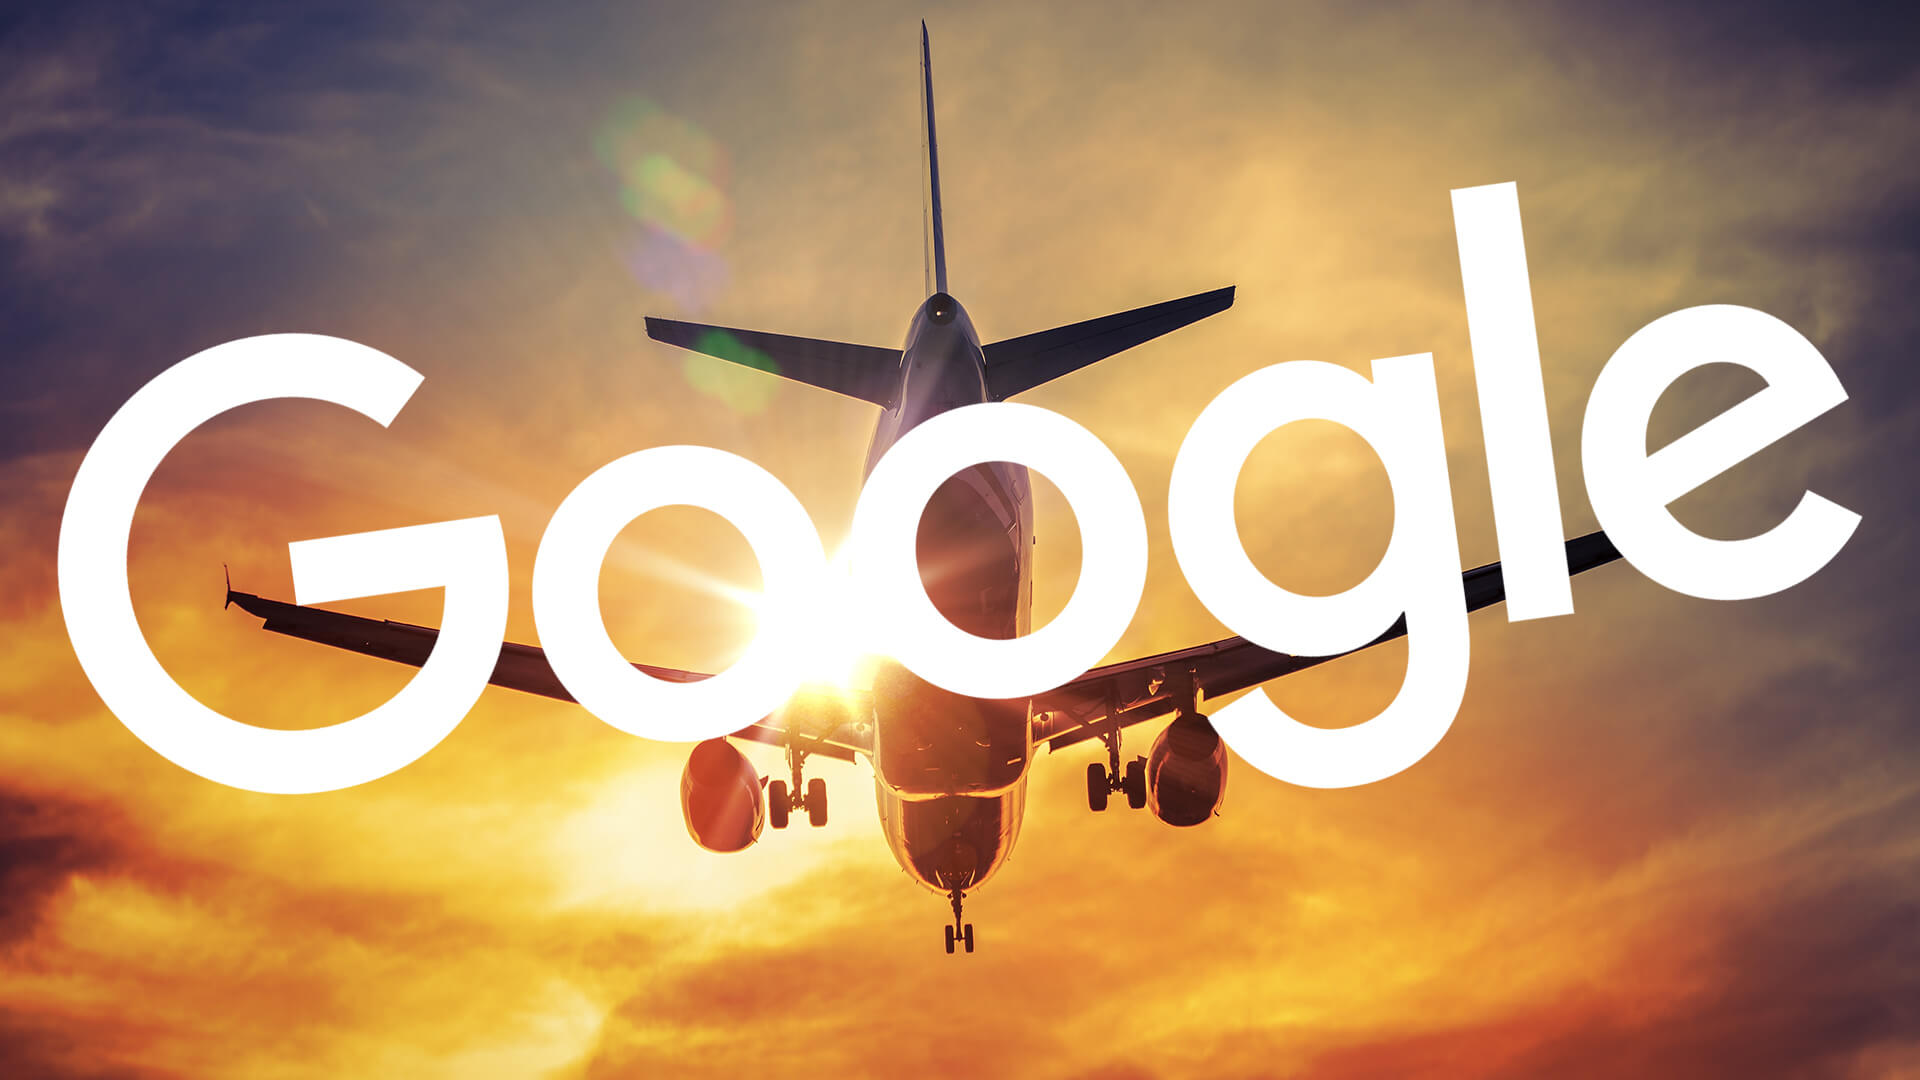 "Viajes" consolida las ofertas de viajes de Google